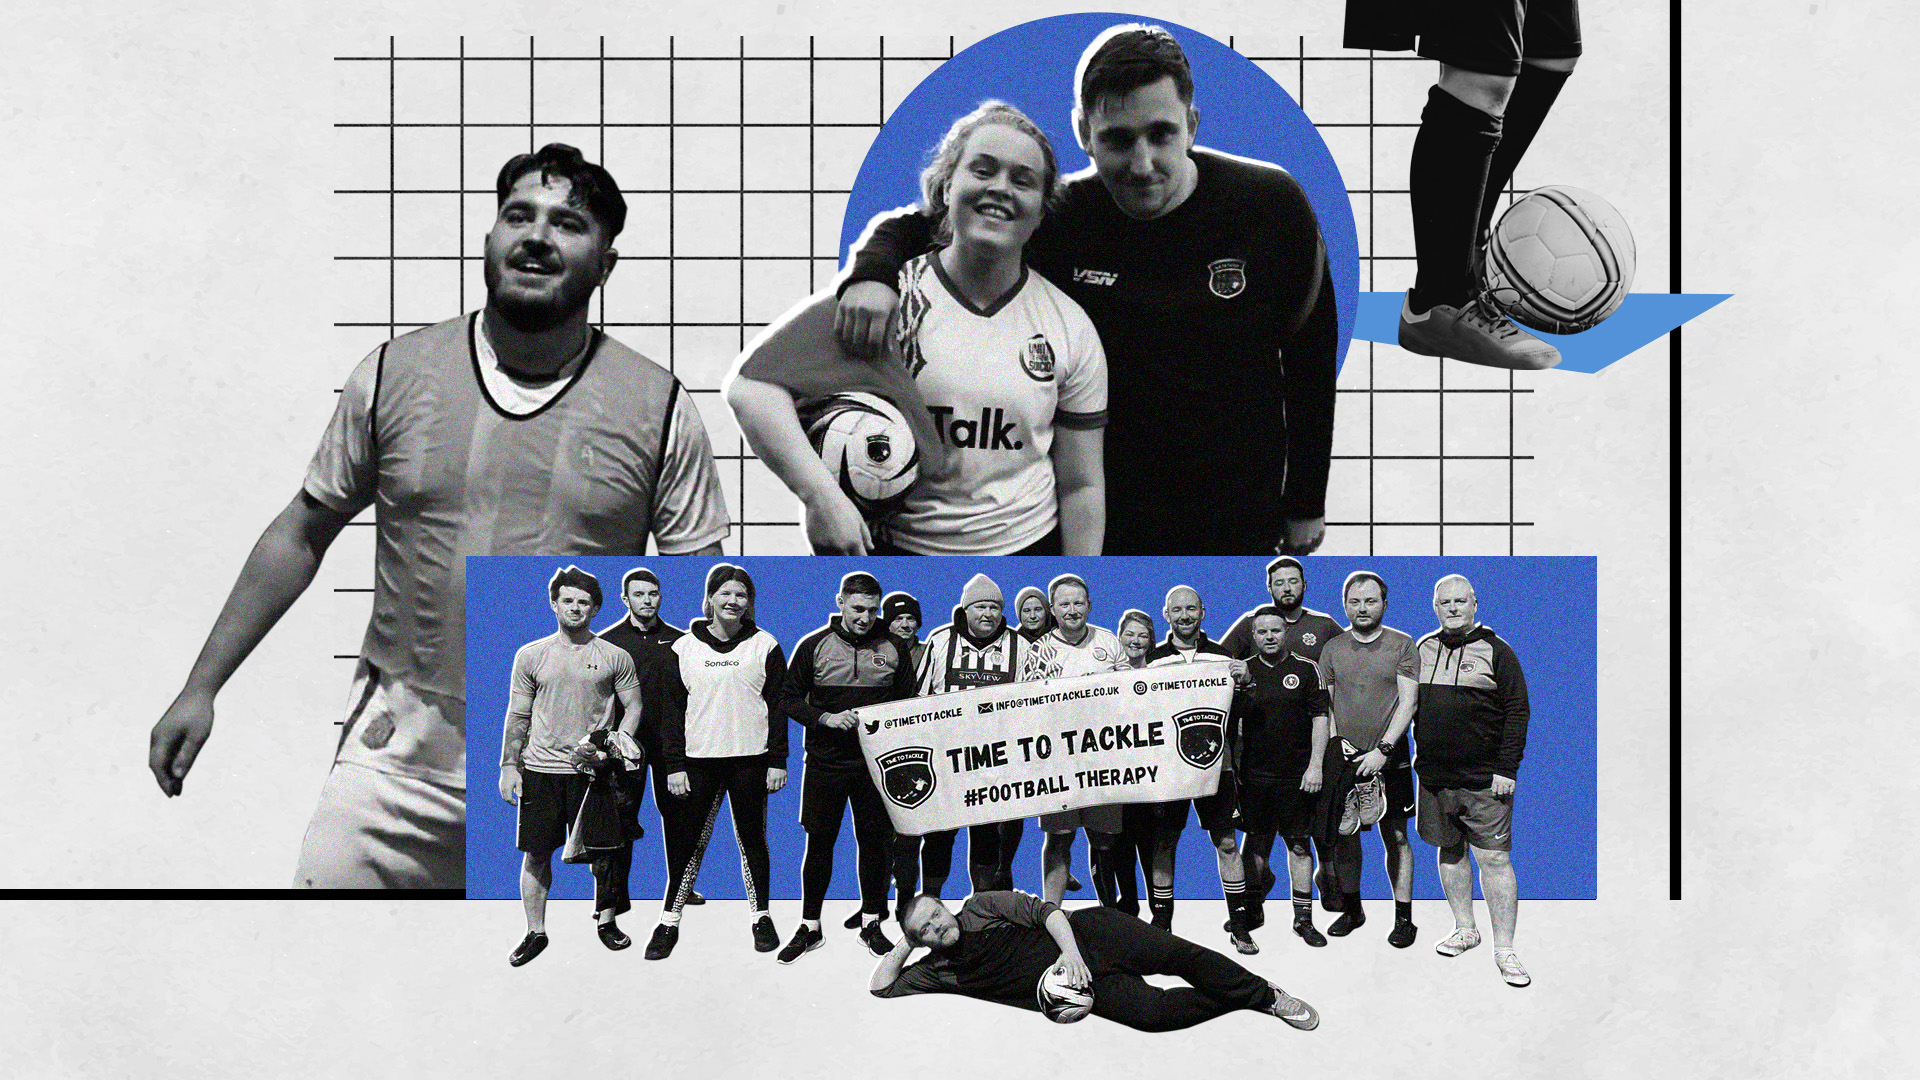 Terapia de fútbol: cómo es la iniciativa de salud mental premiada por el exprimer ministro británico Boris Johnson y por la UEFA